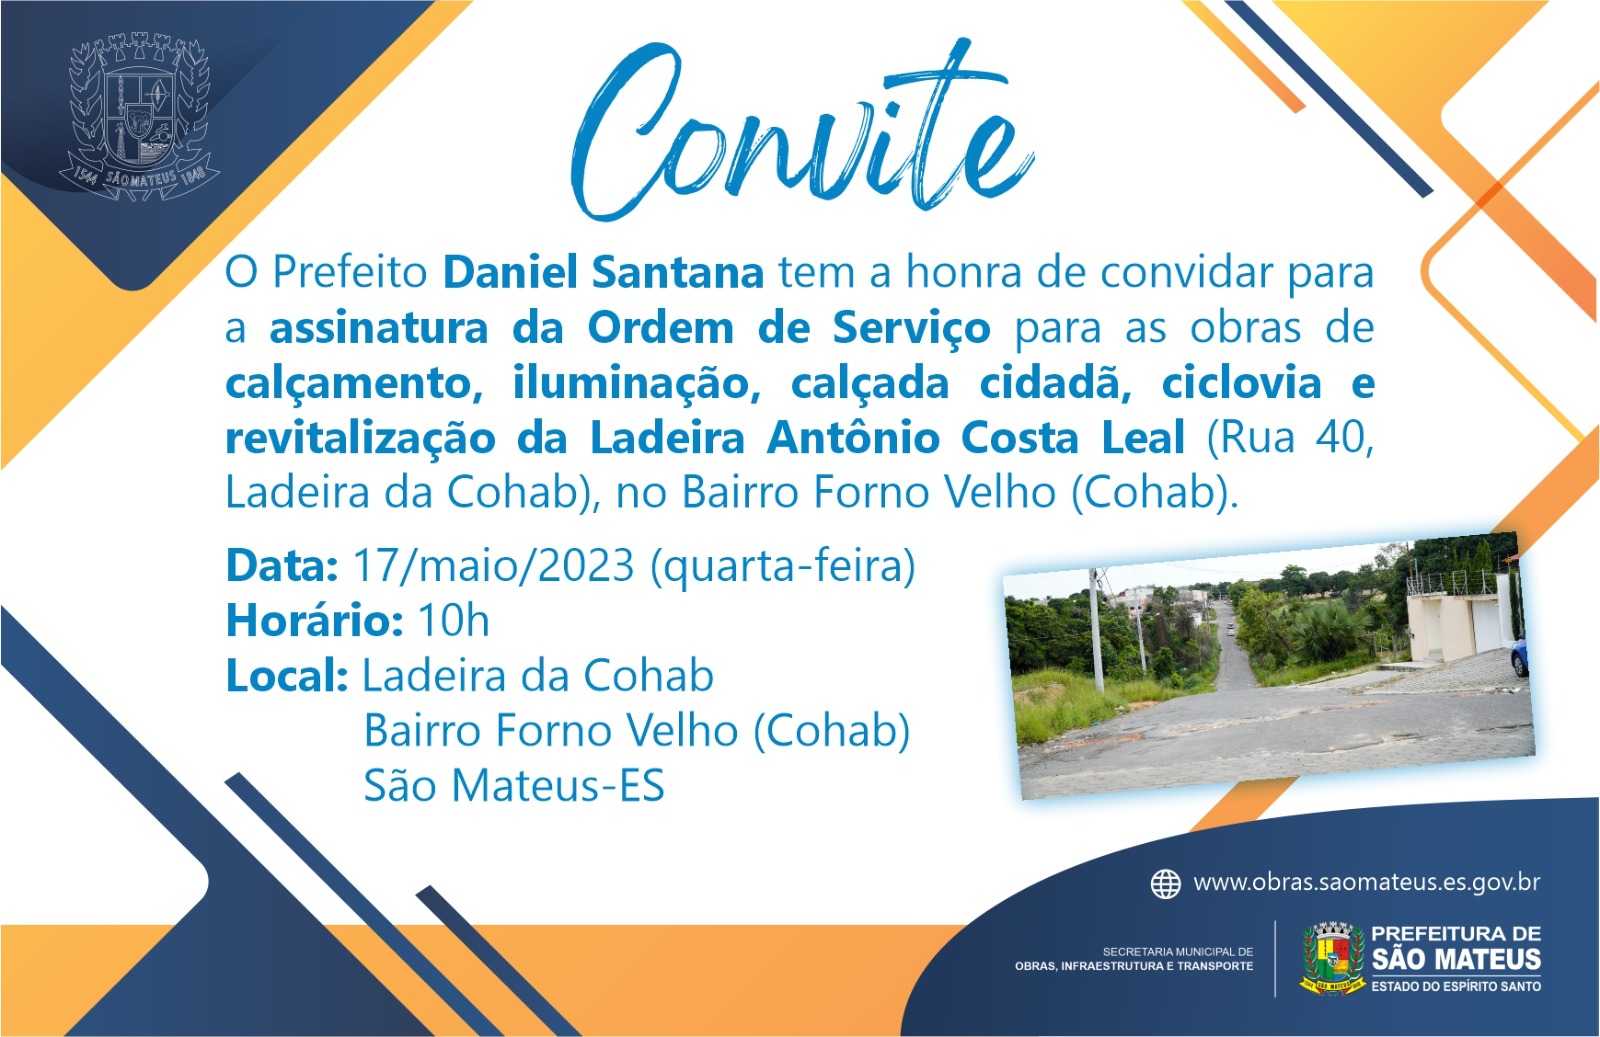 CONVITE - ASSINATURA DA ORDEM DE SERVIÇO PARA AS OBRAS DA LADEIRA ANTÔNIO COSTA LEAL